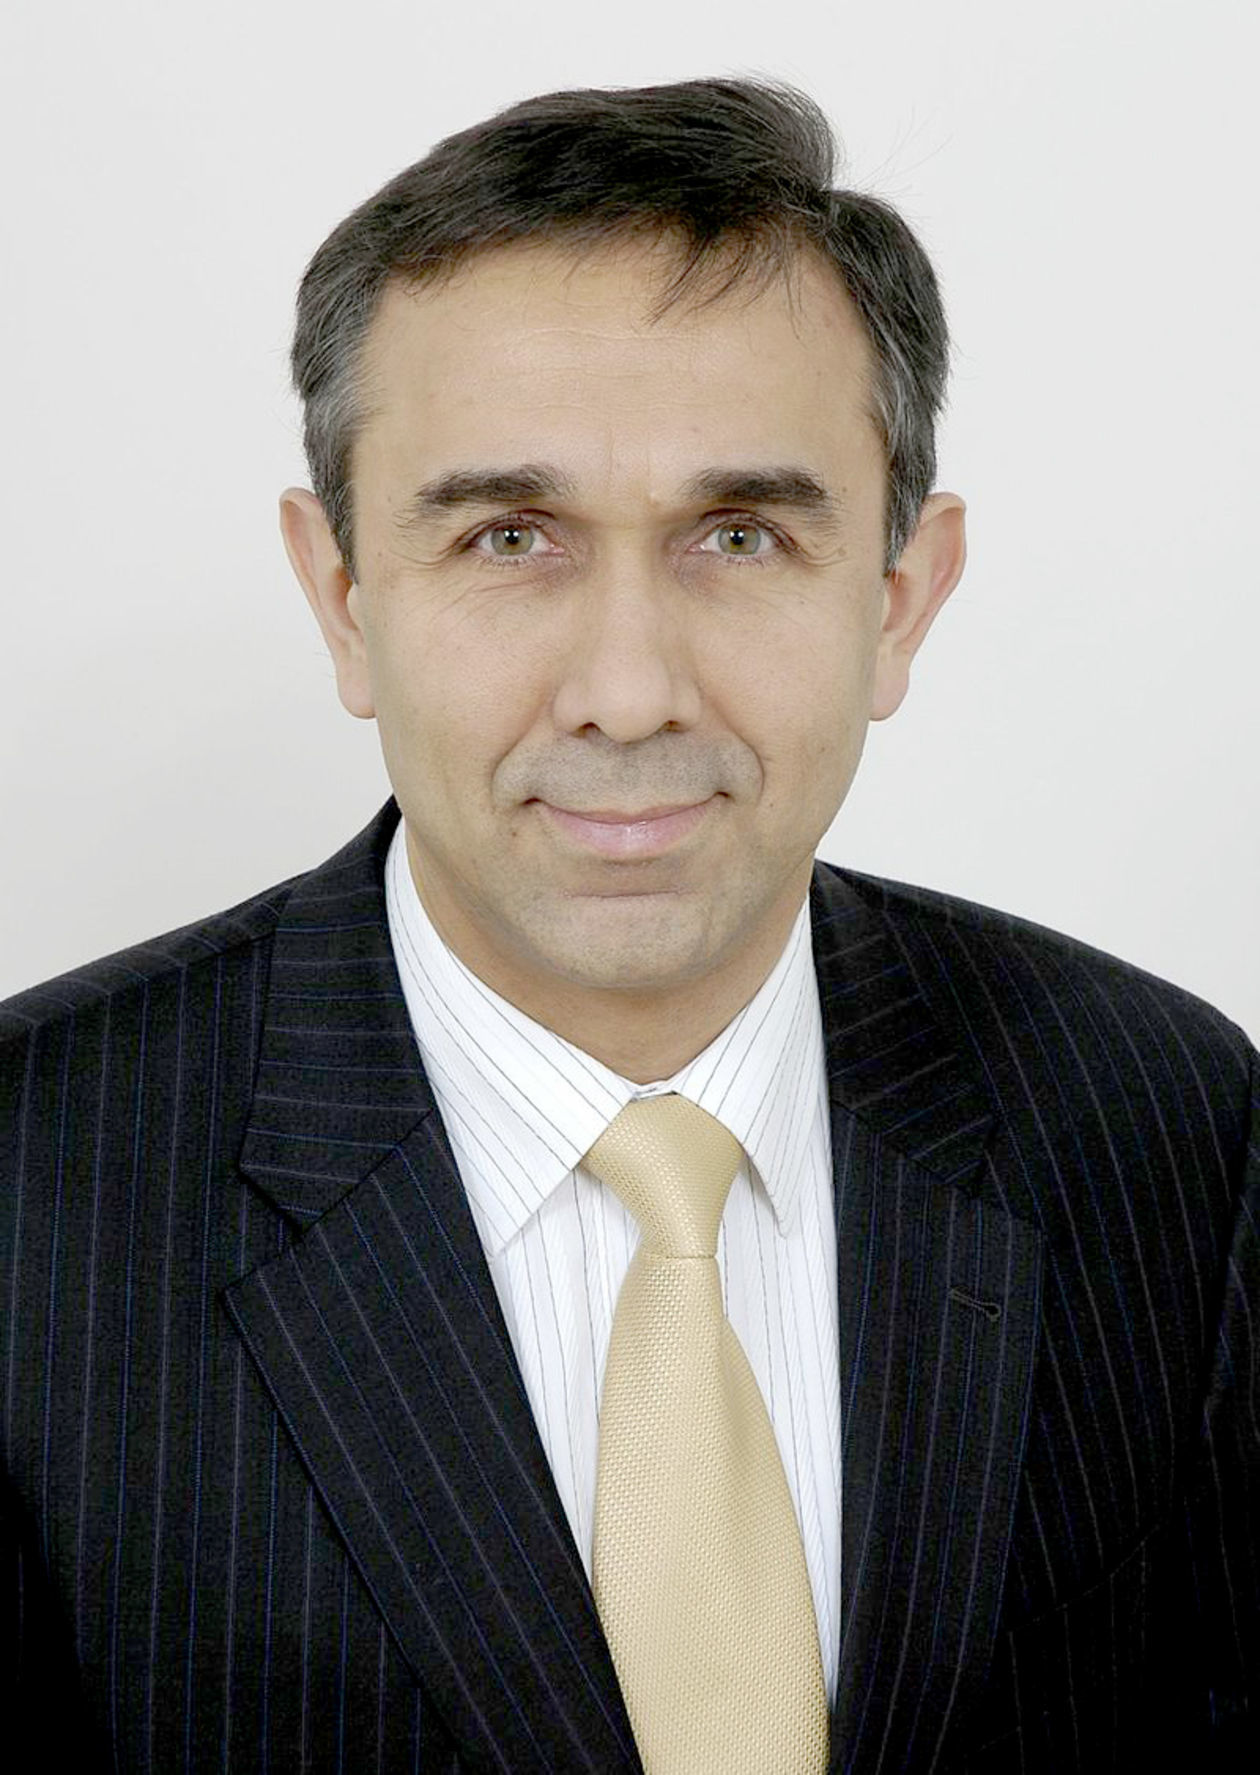  <p>31. Grzegorz Czelej, senator PiS (4,04 mln zł)</p>